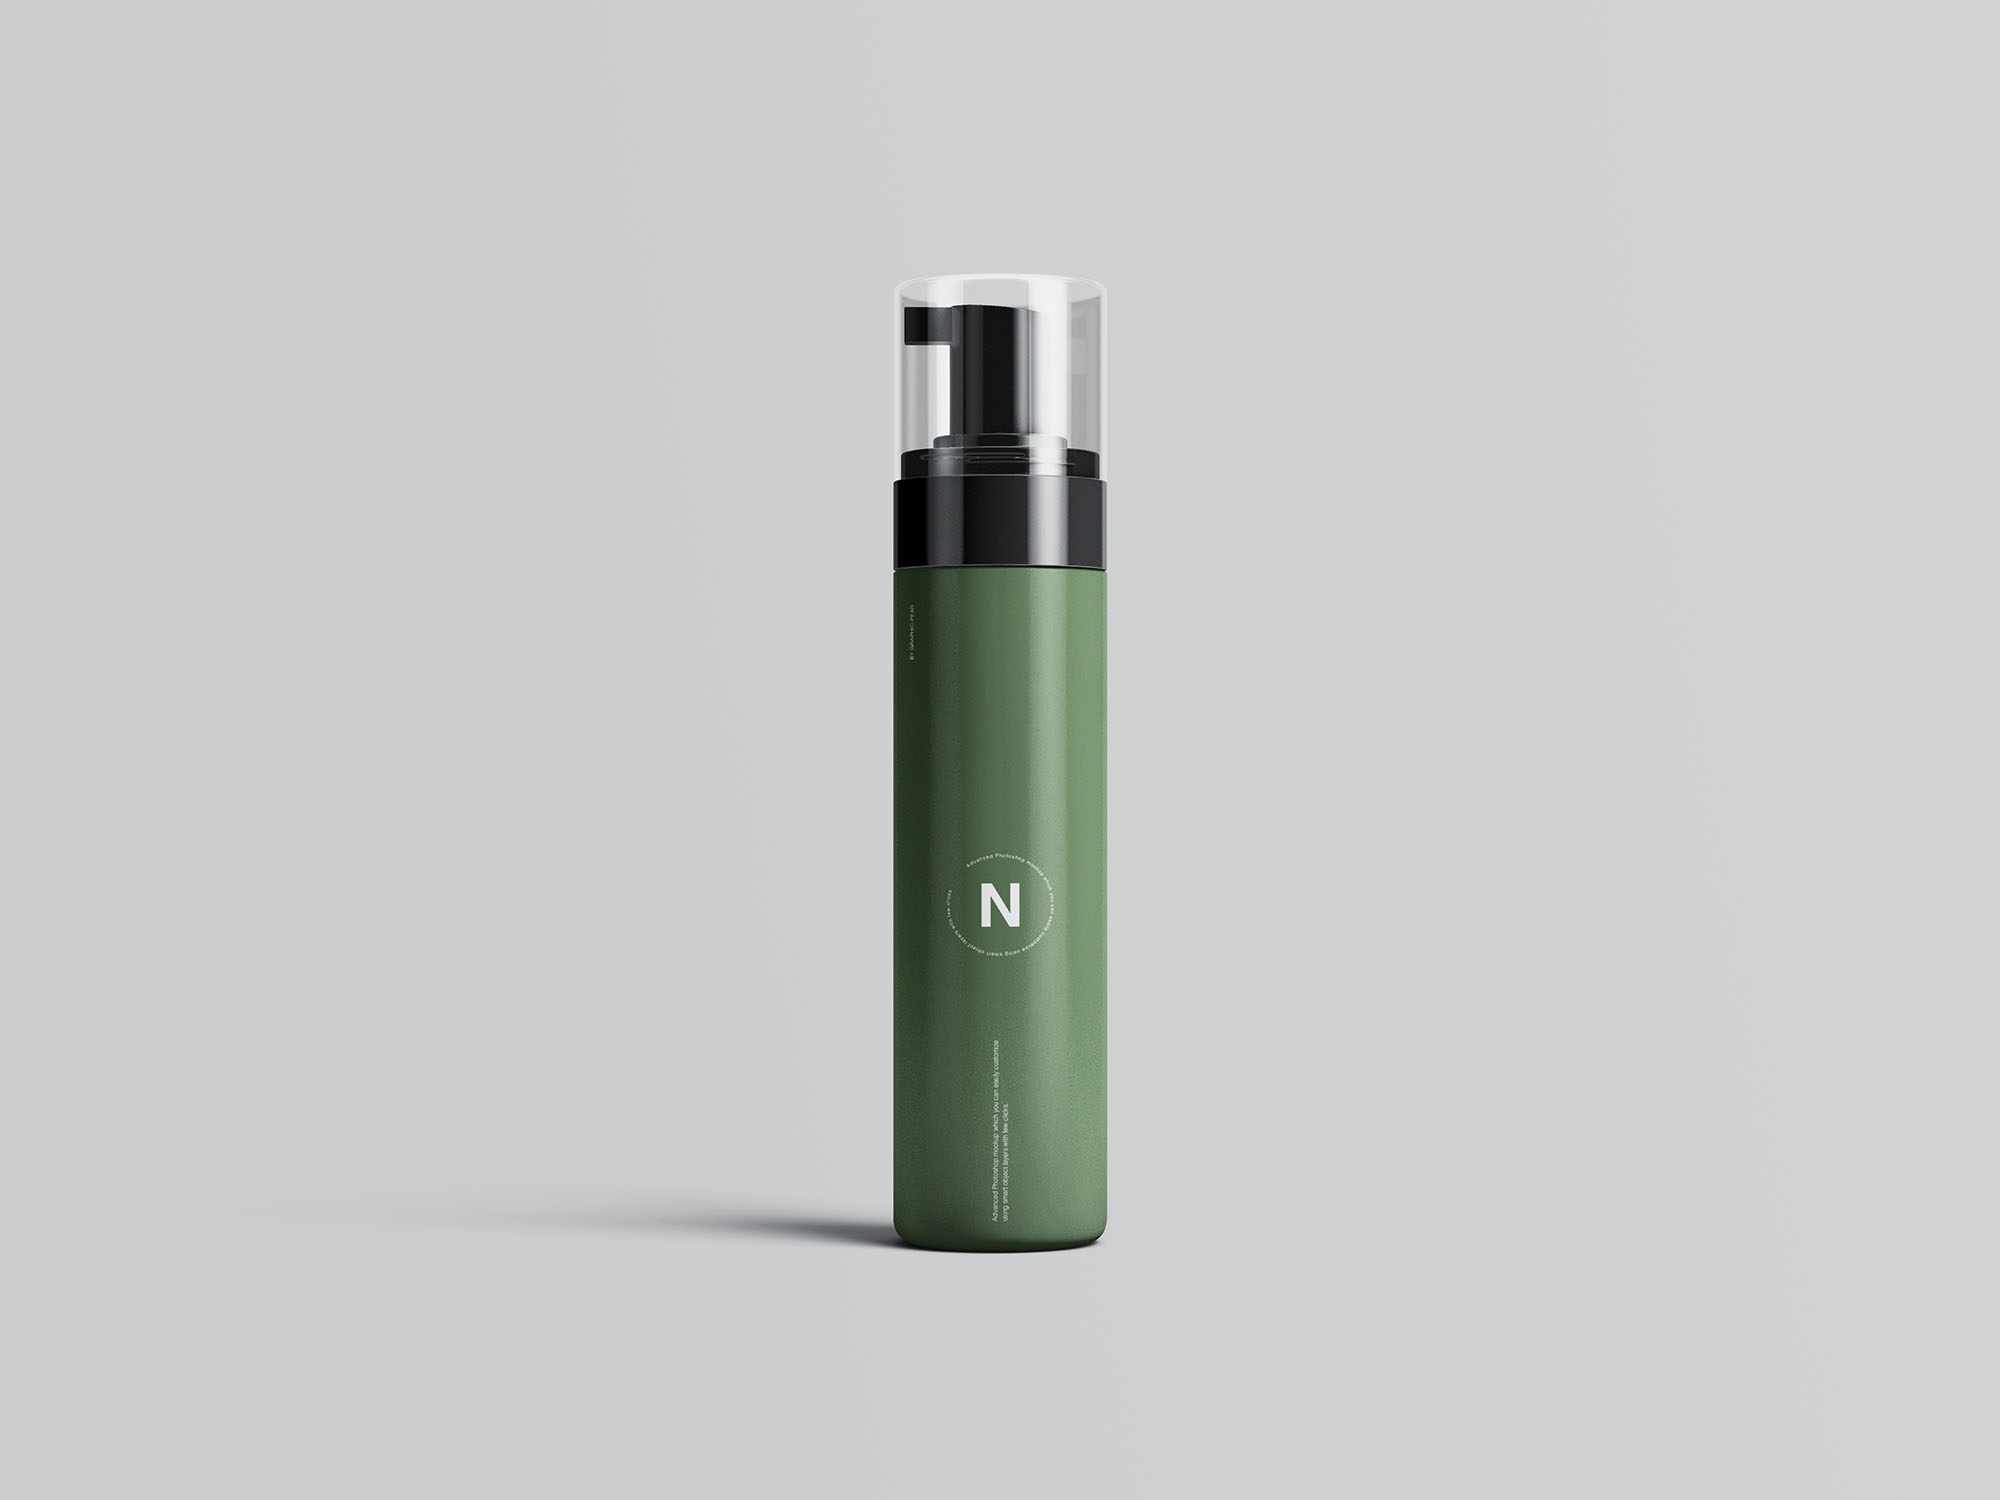 按压式化妆品护肤品瓶外观设计16设计网精选模板 Cosmetic Bottles Packaging Mockup插图(2)